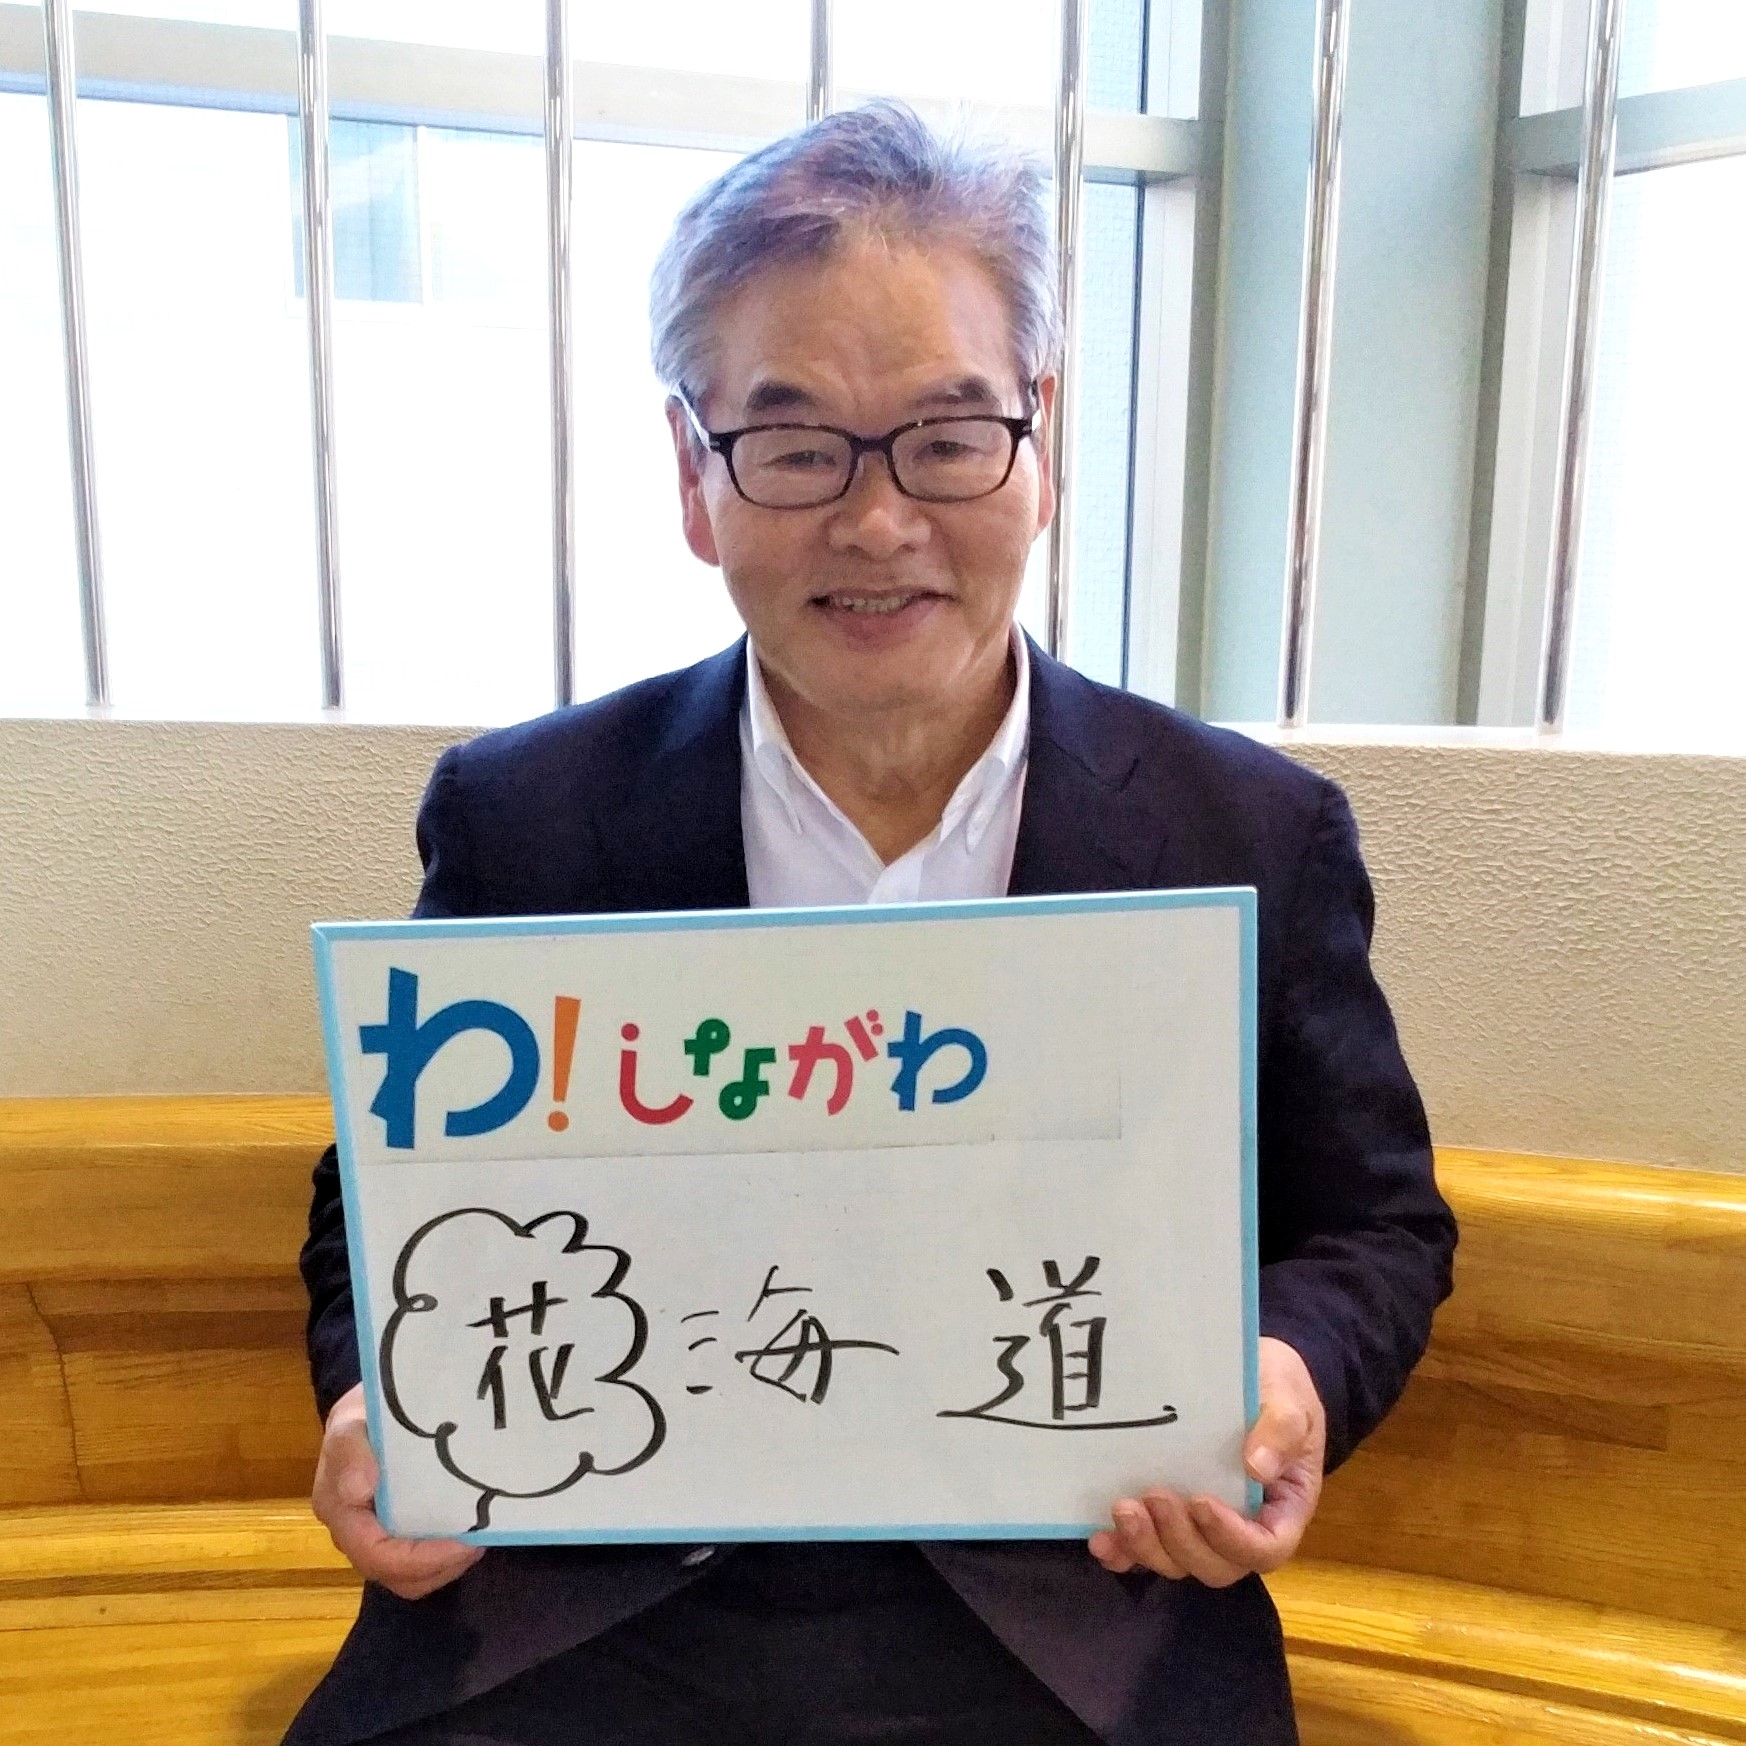 永尾さんのメッセージ「花海道」